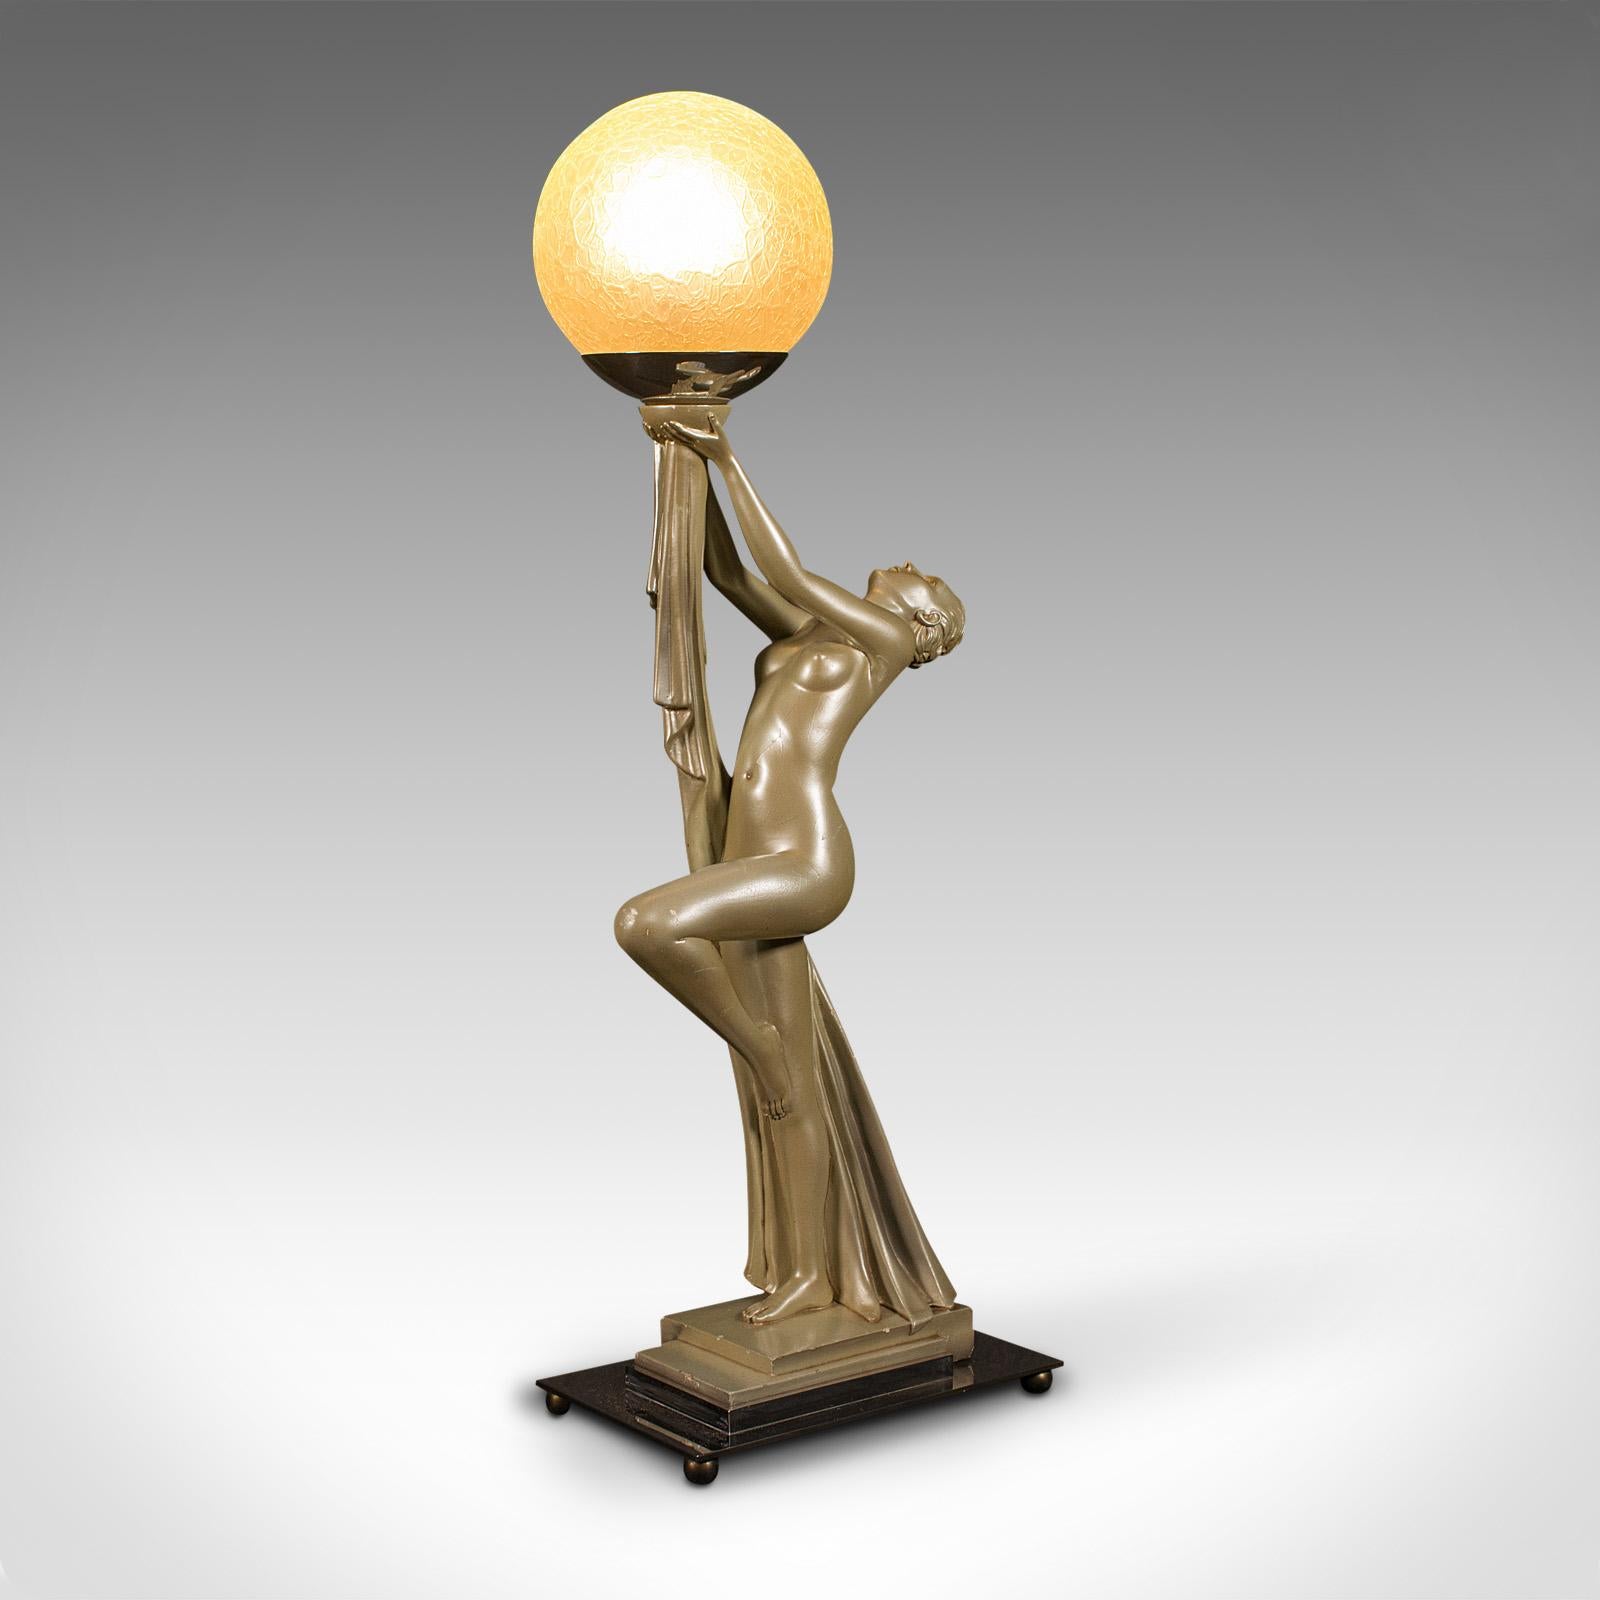 Il s'agit d'une lampe de table figurative vintage. Une lampe de bureau anglaise en plâtre métallique dans le goût Art Déco par Leonardine, datant du début du 20e siècle, vers 1930.

Lampe Art Déco saisissante avec l'intemporelle forme féminine